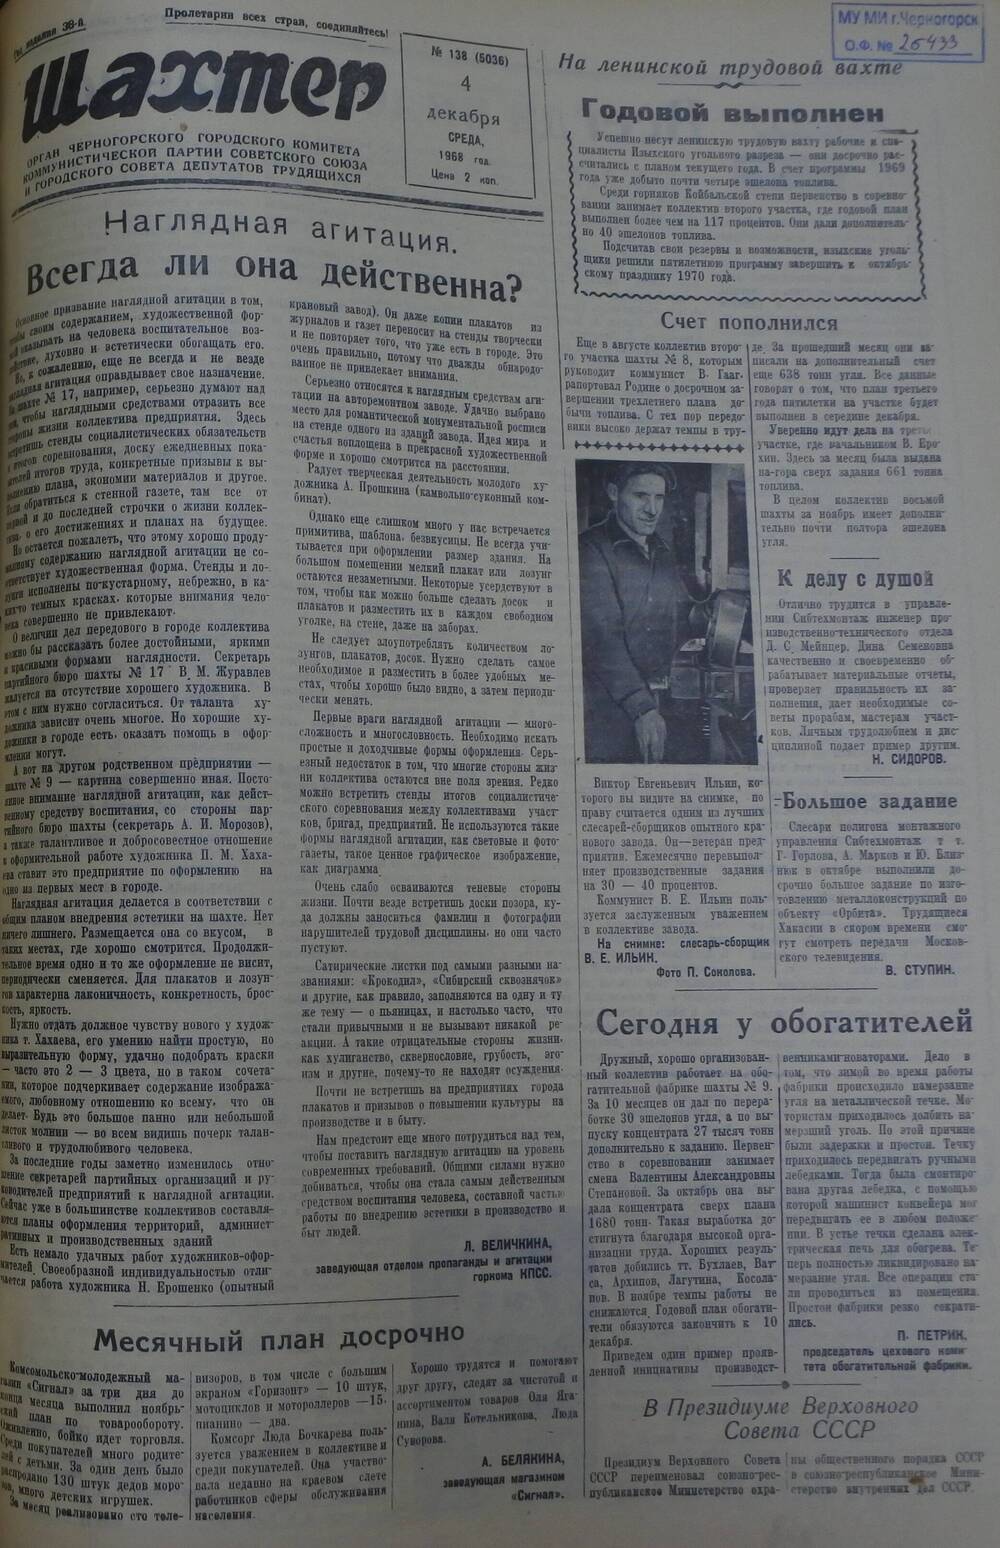 Газета «Шахтер». Выпуск № 138 от 4.12.1968 г.